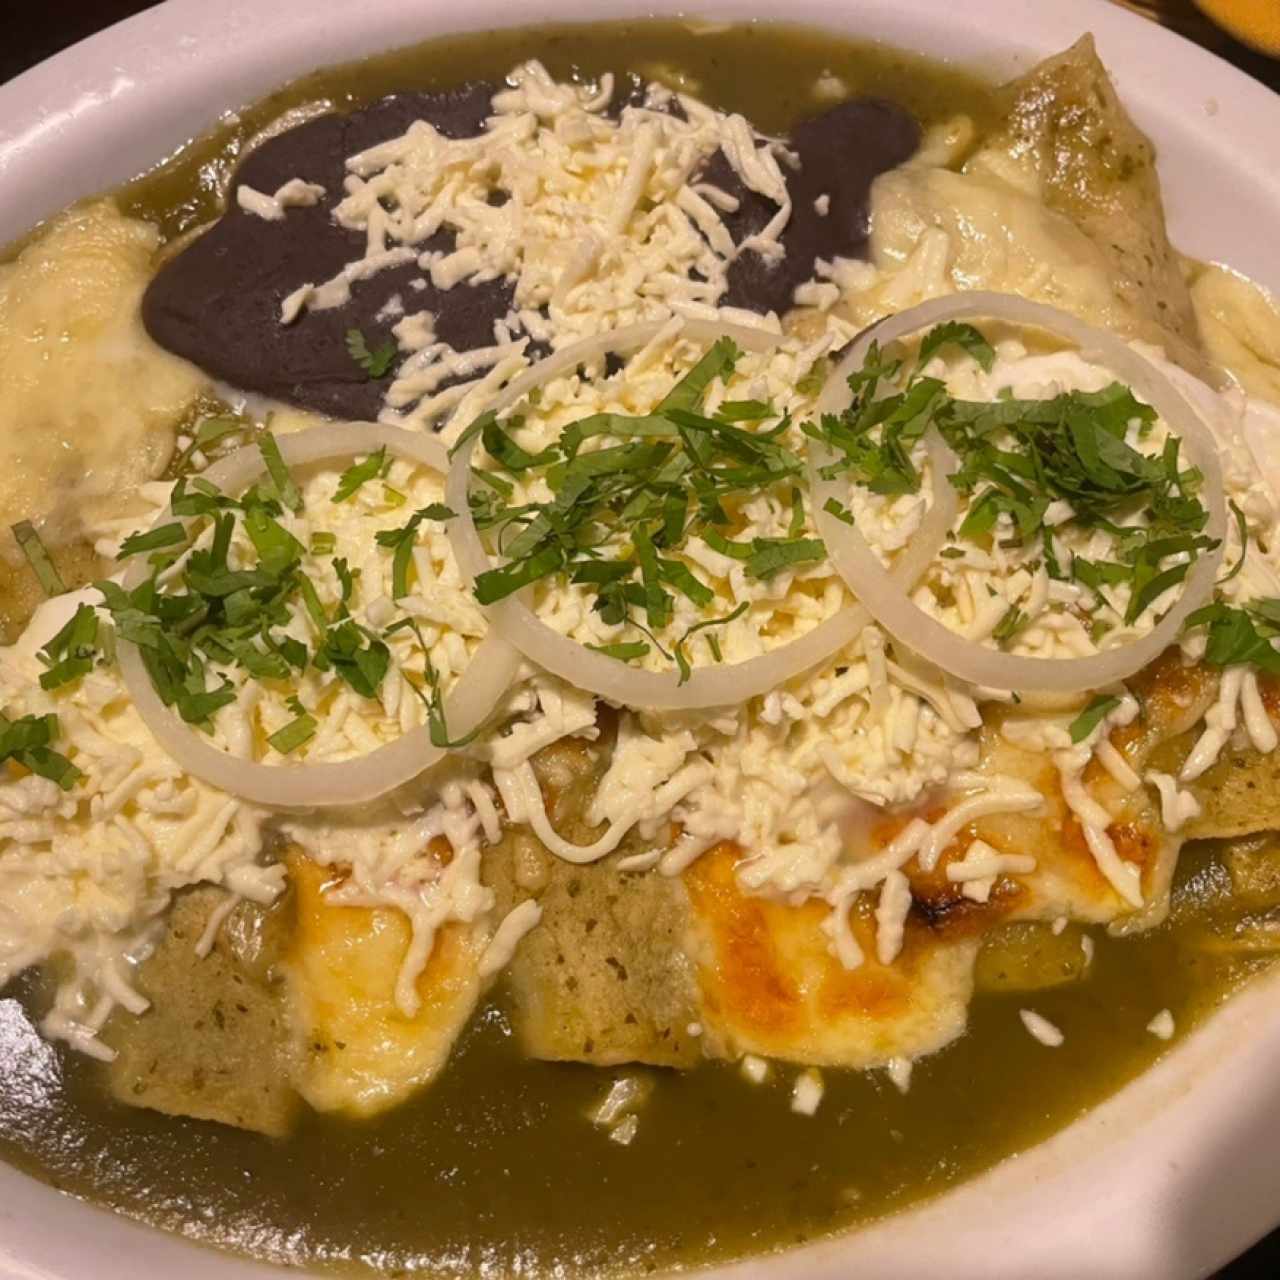 Los Tradicionales - Enchiladas